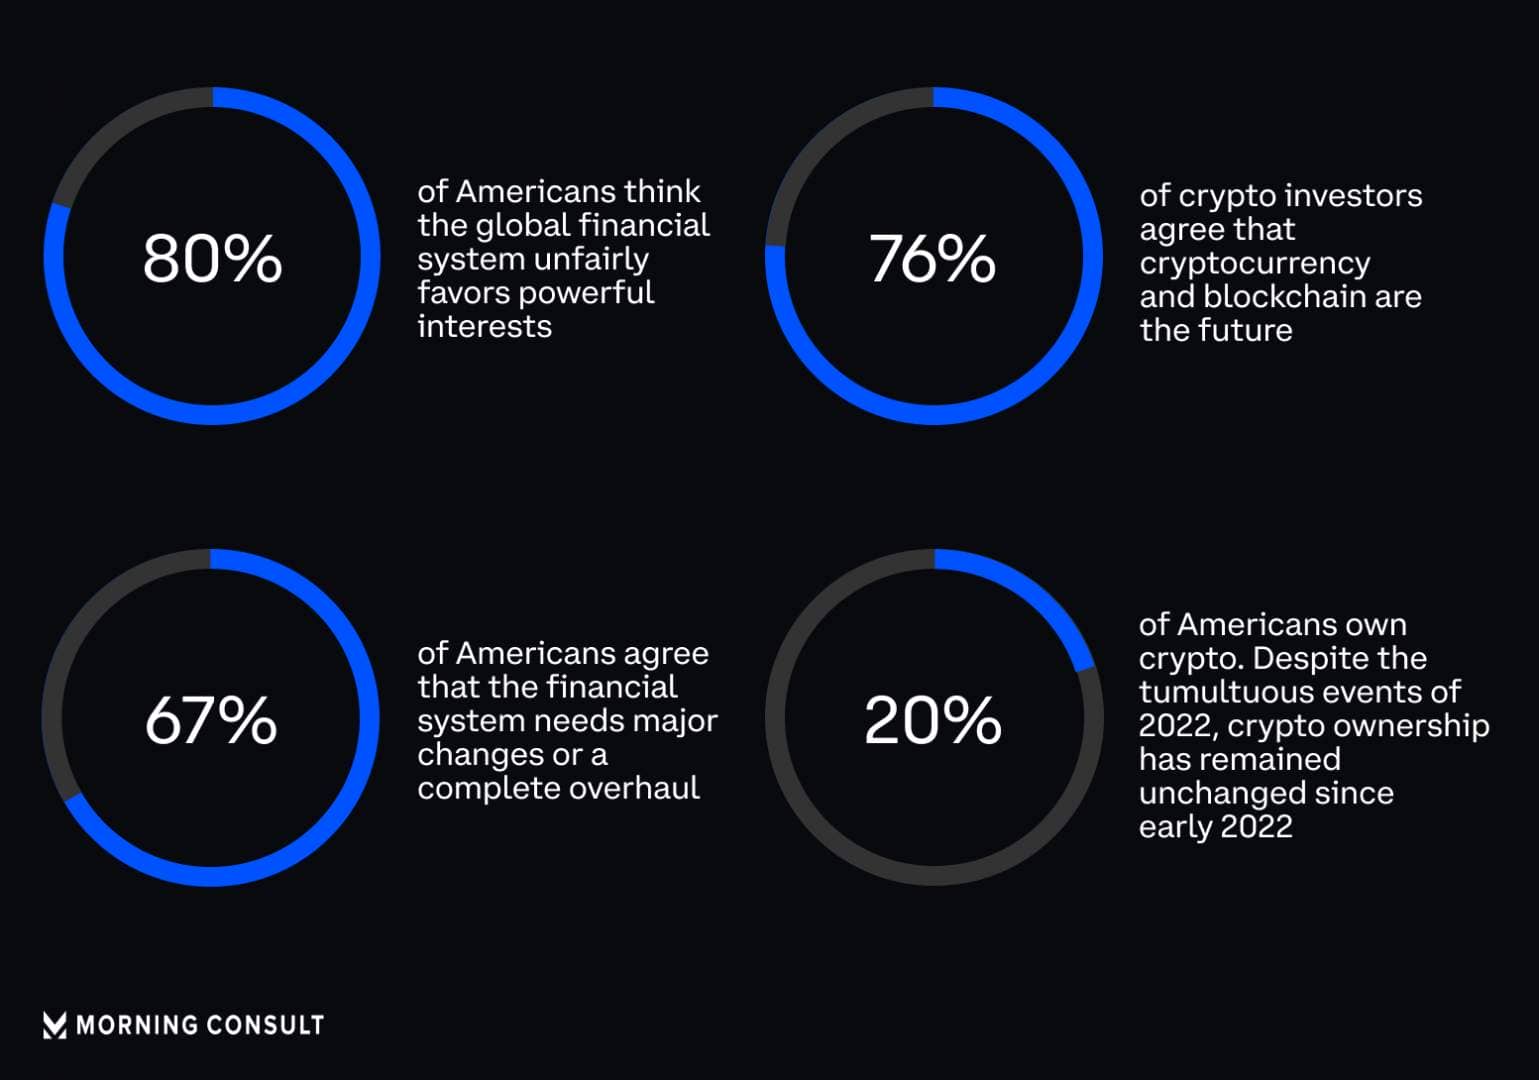 Bitcoin et les cryptos sont promis à un bel avenir d’après ces sondés américains.